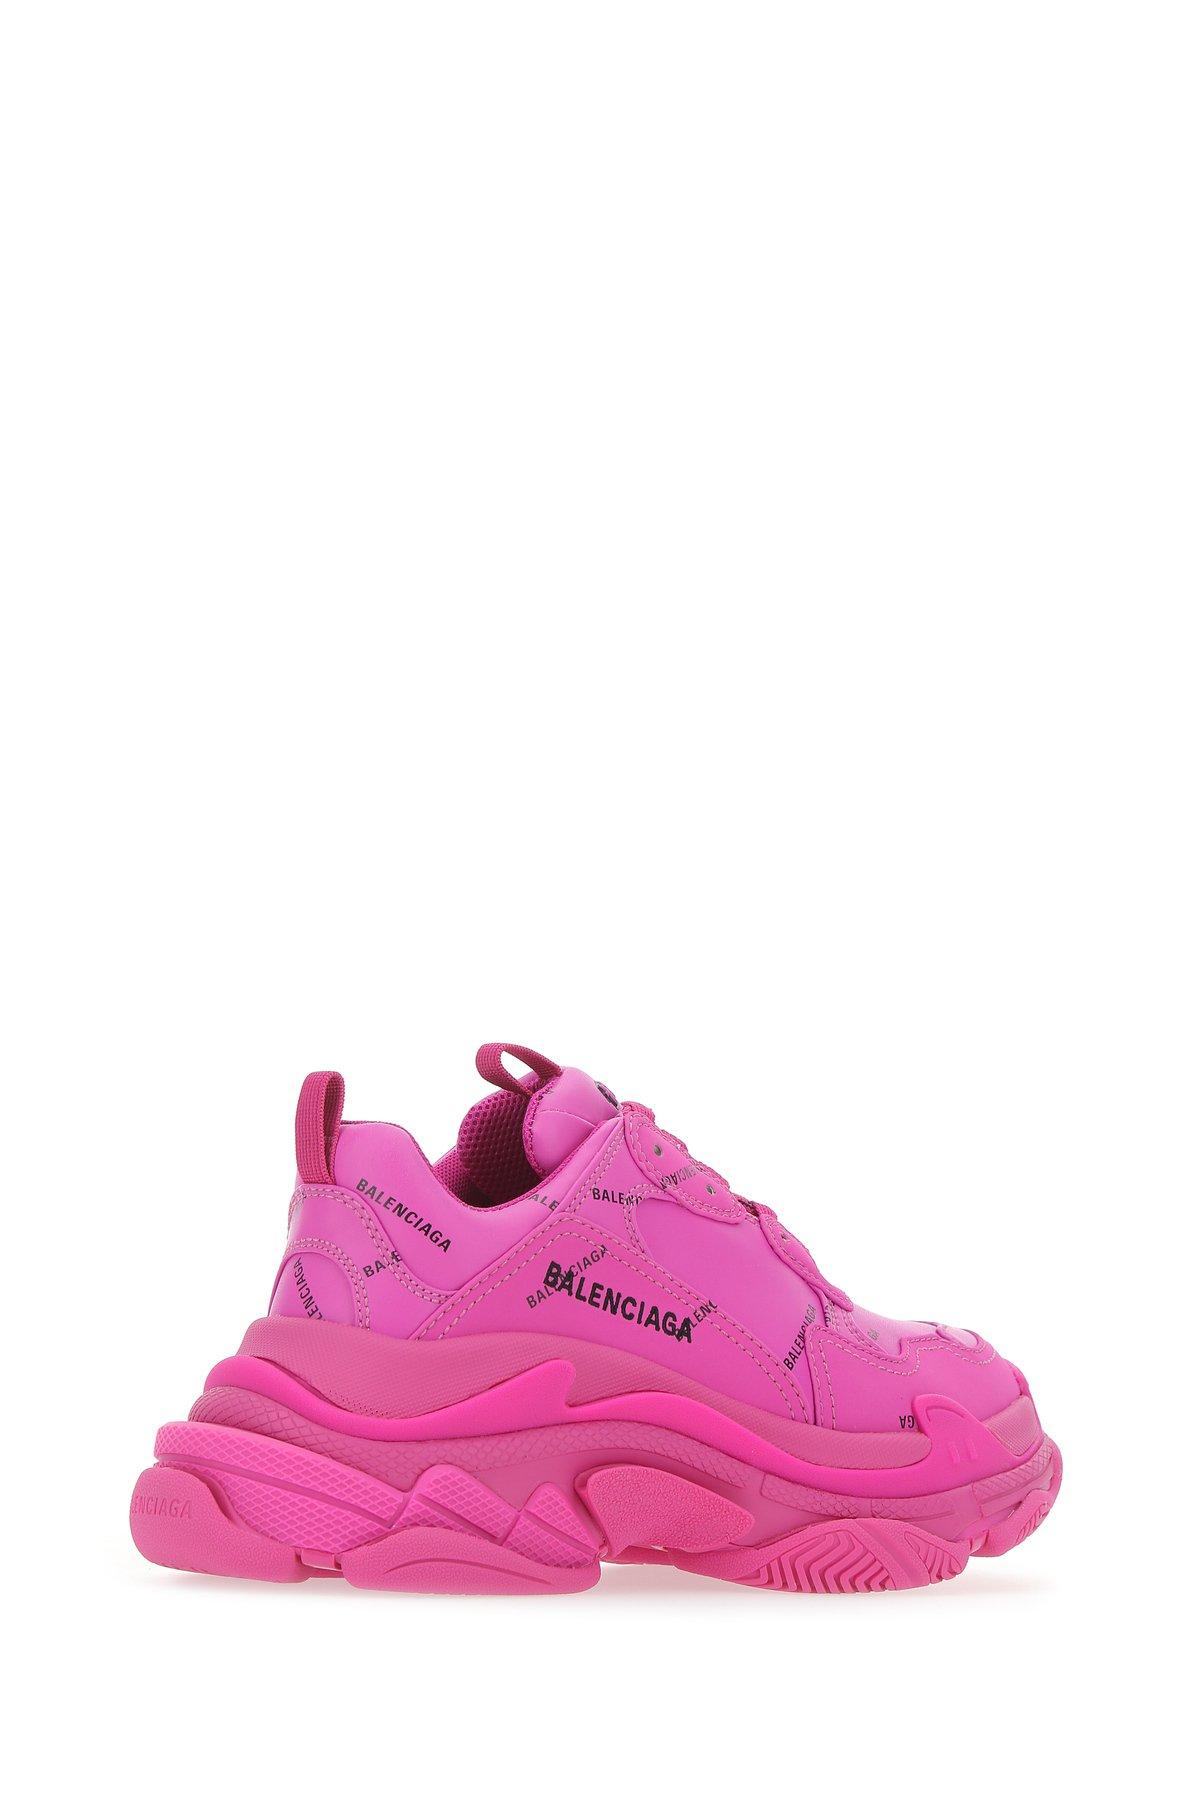 Balenciaga Triple S Sneaker in Pink - Lyst